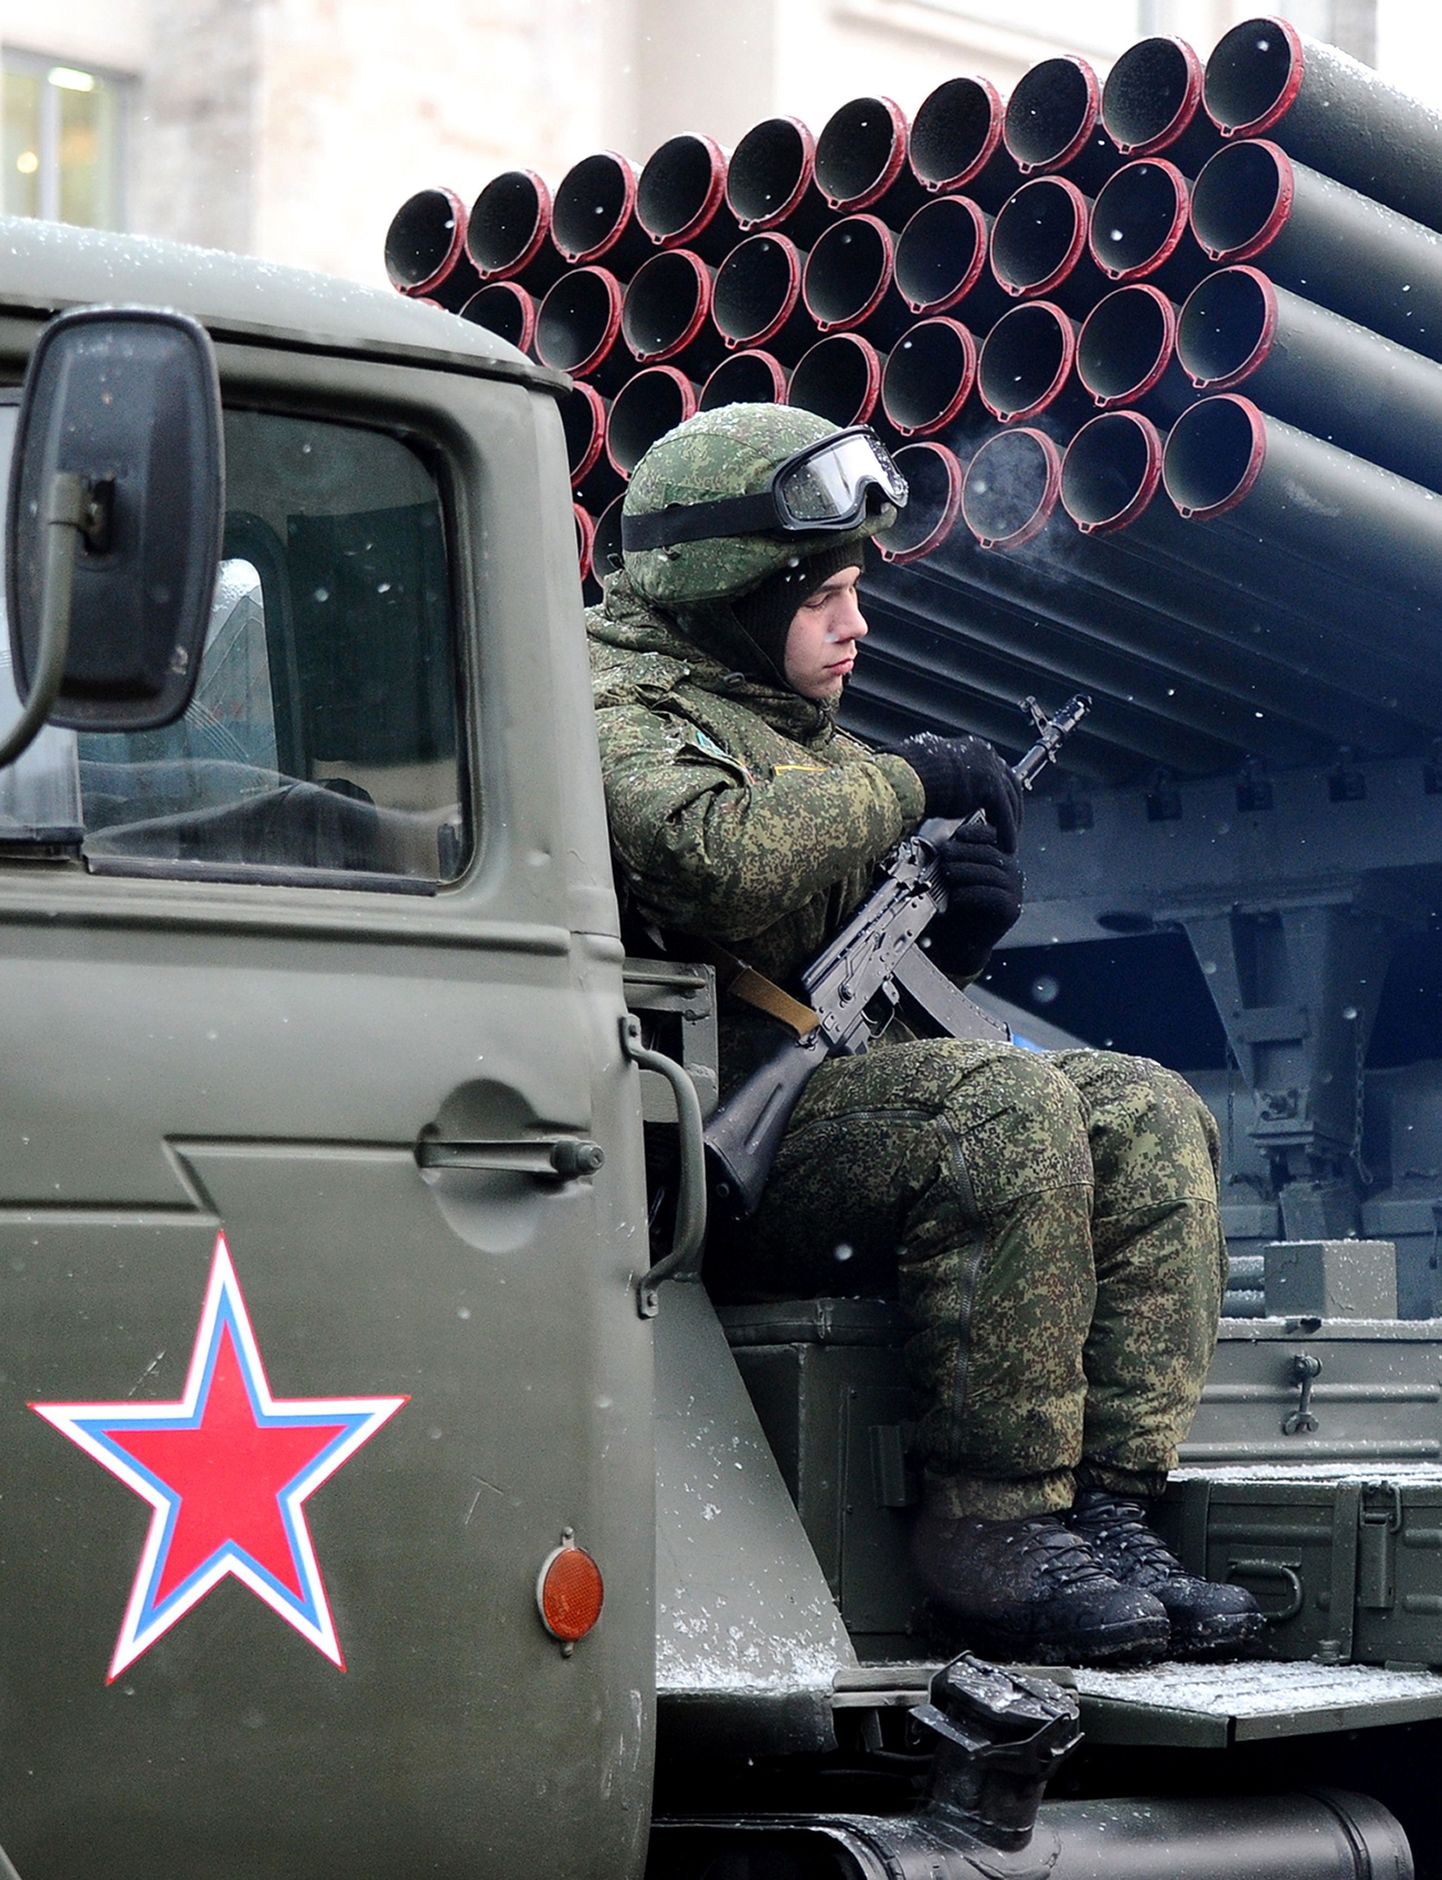 Vene sõdur puhkehetkel raketisüsteemil BM-21 Grad. Foto pole tehtud Donetski oblastis.